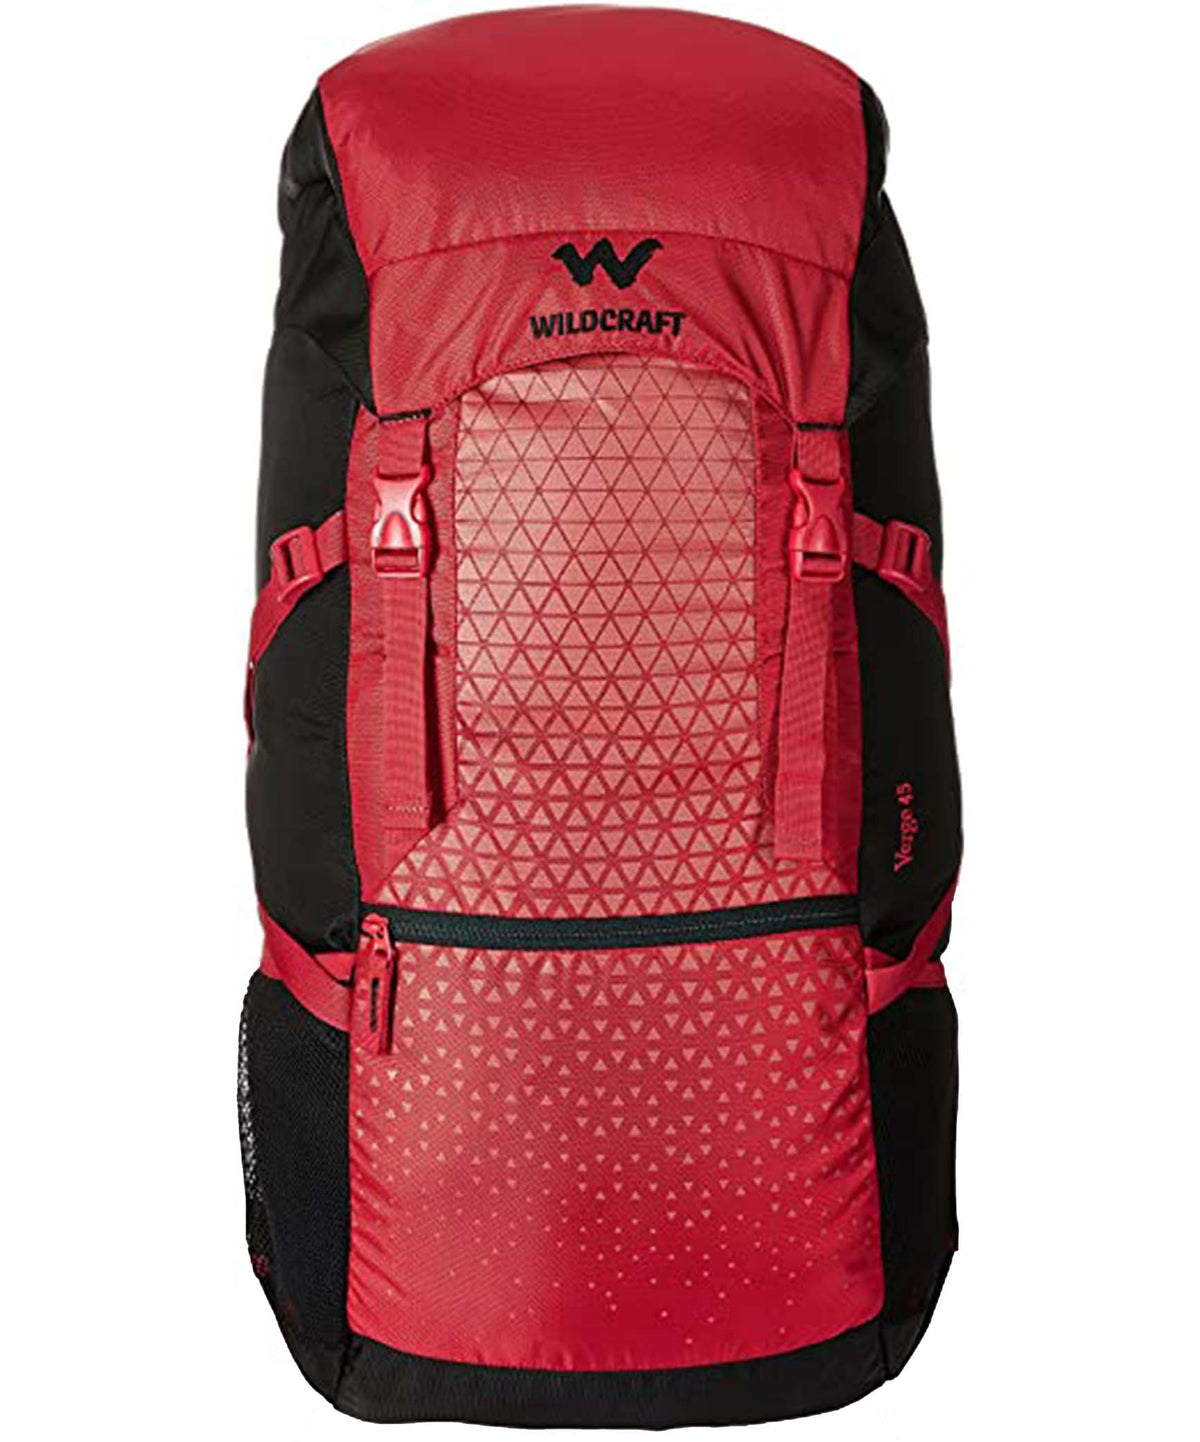 Wildcraft Verge 45 Red Camping Bag, VERGE45RD